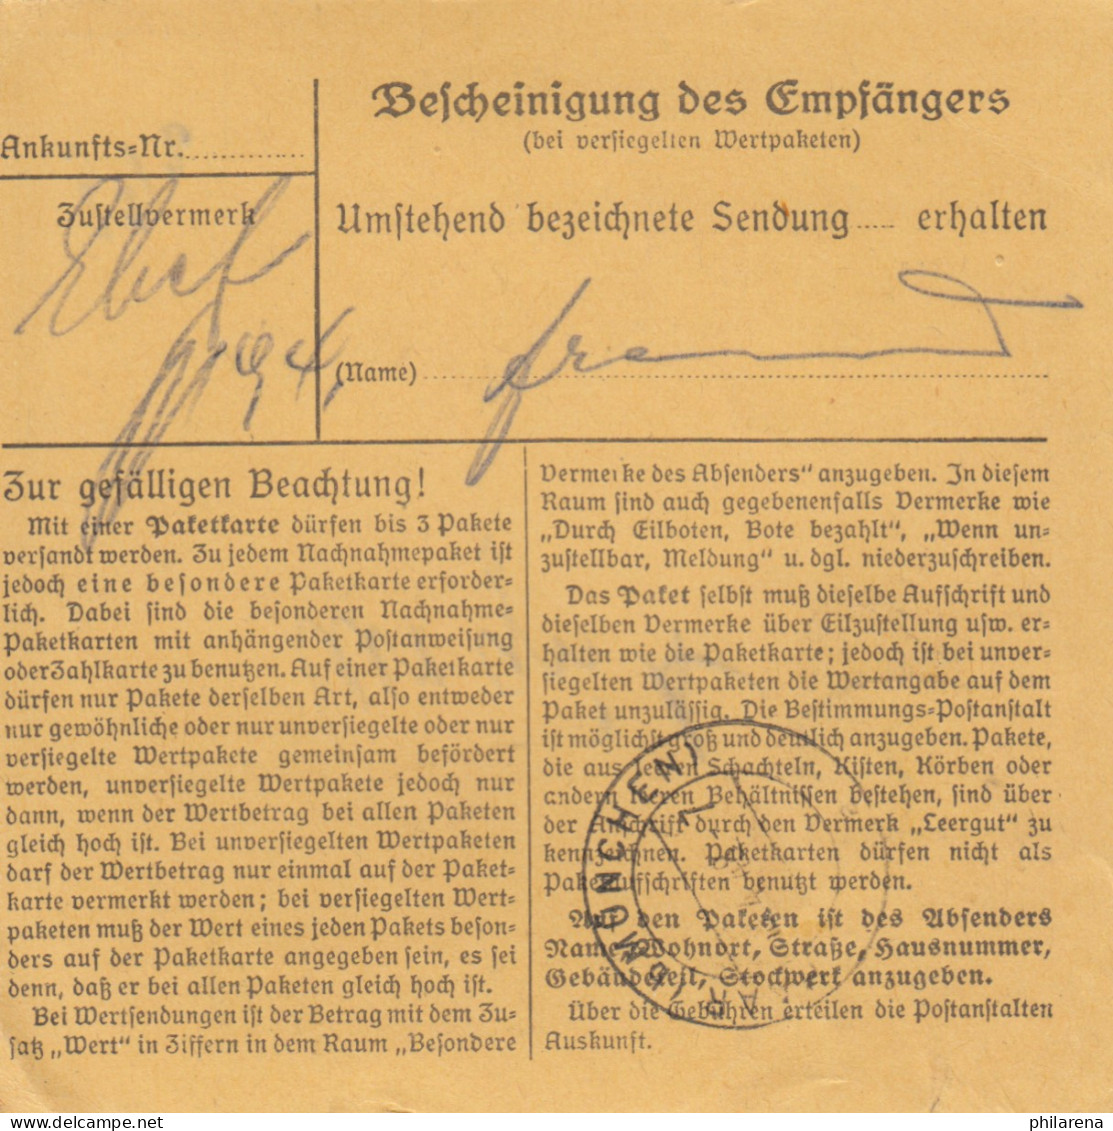 Paketkarte 1948: Moosburg Nach Damenkleider In Haar, Leergut - Lettres & Documents